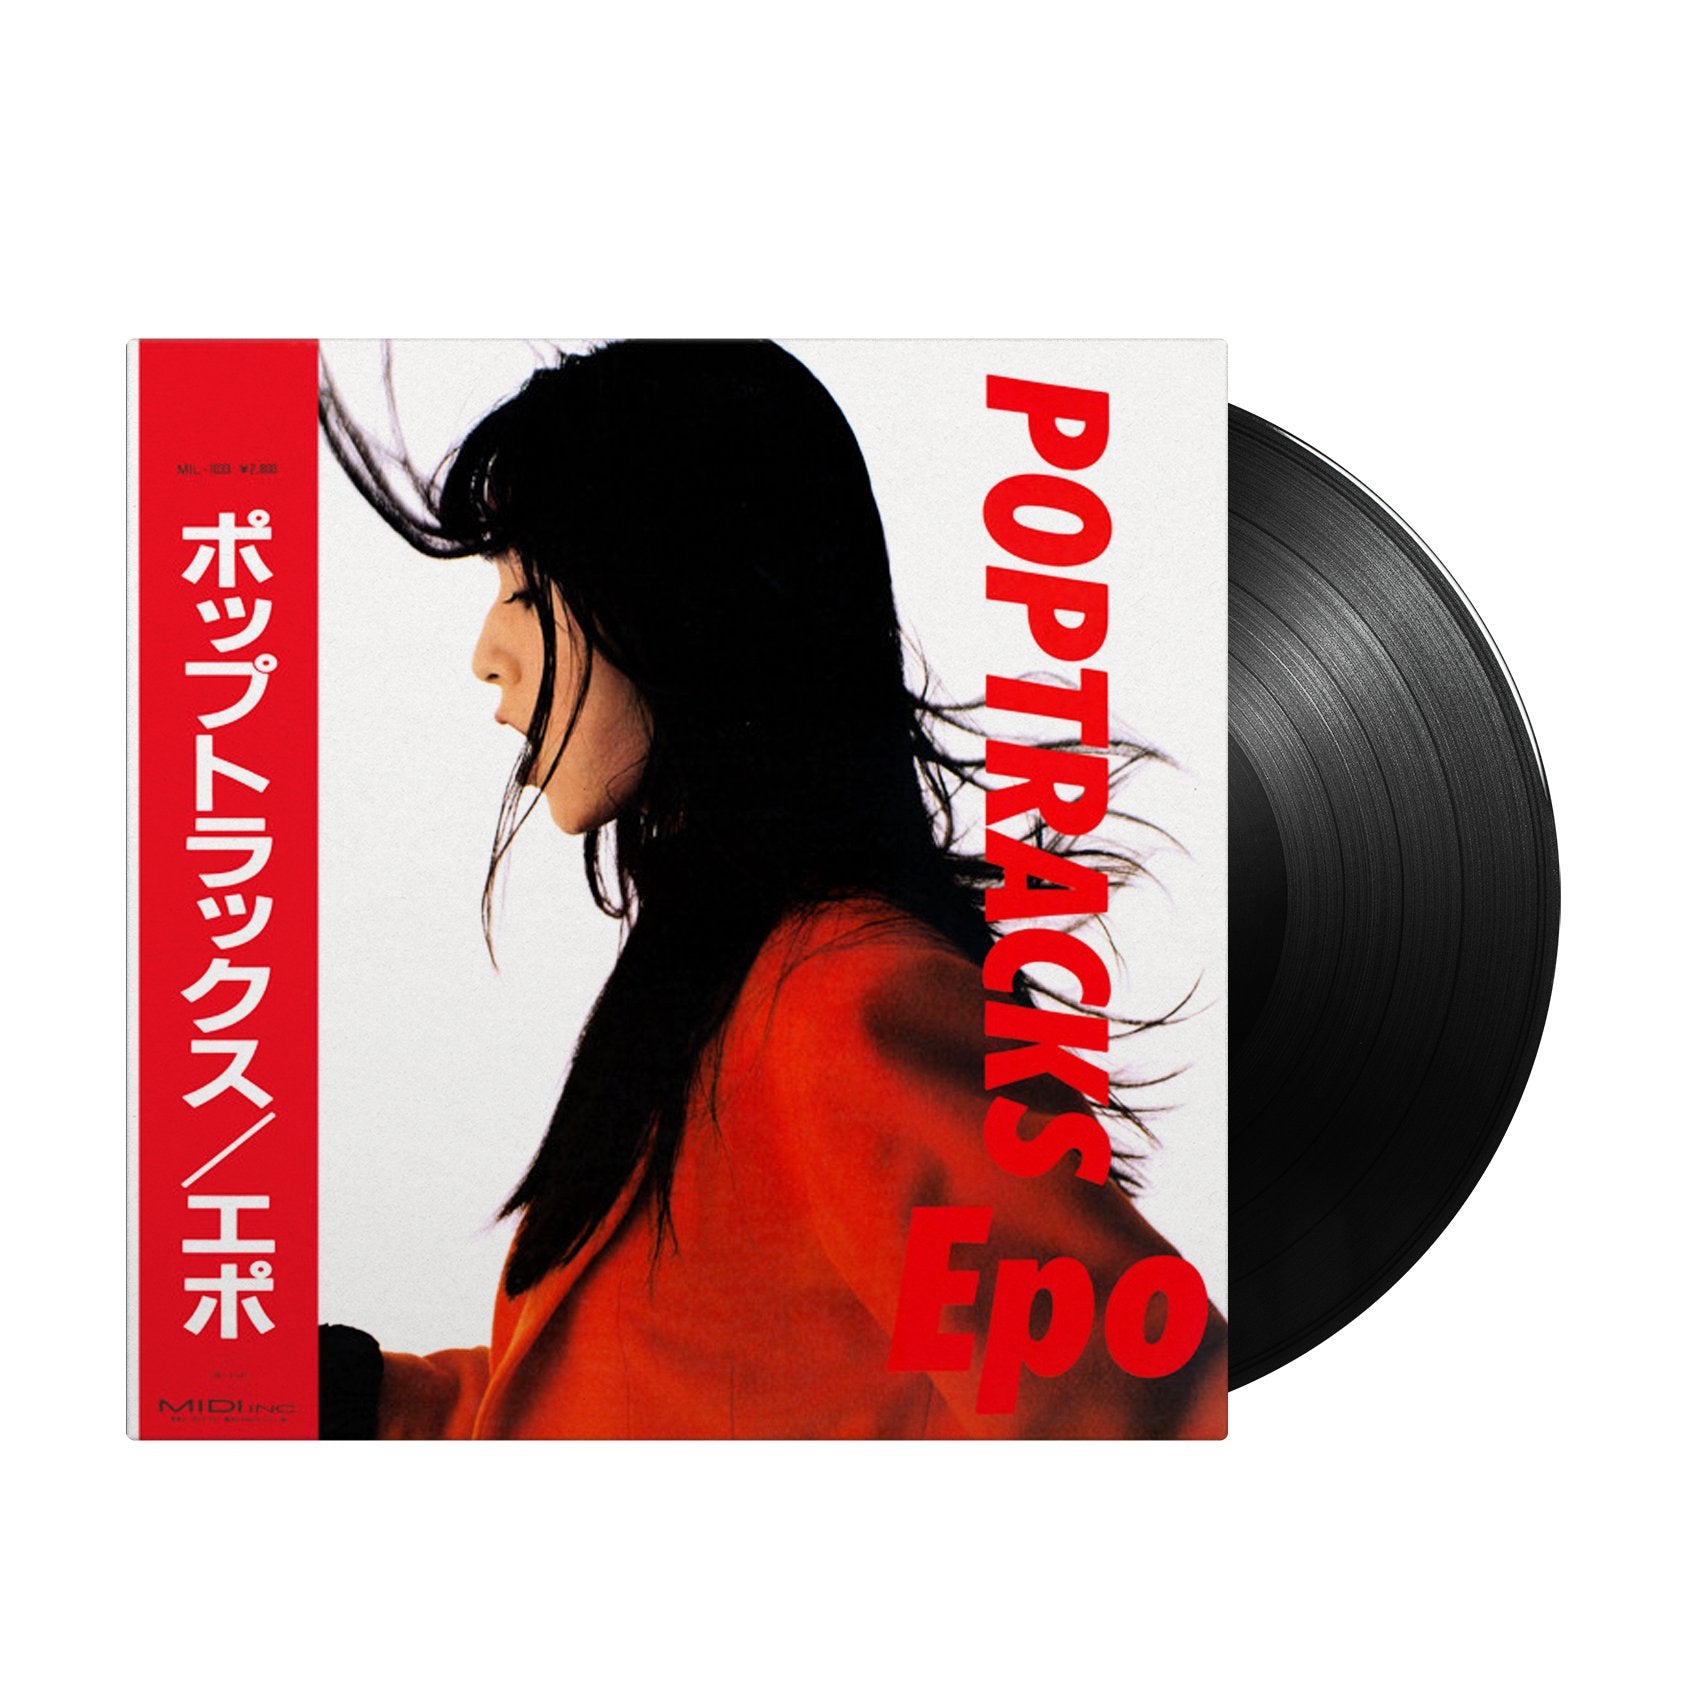 Epo - Poptracks (Japan Import) - Inner Ocean Records